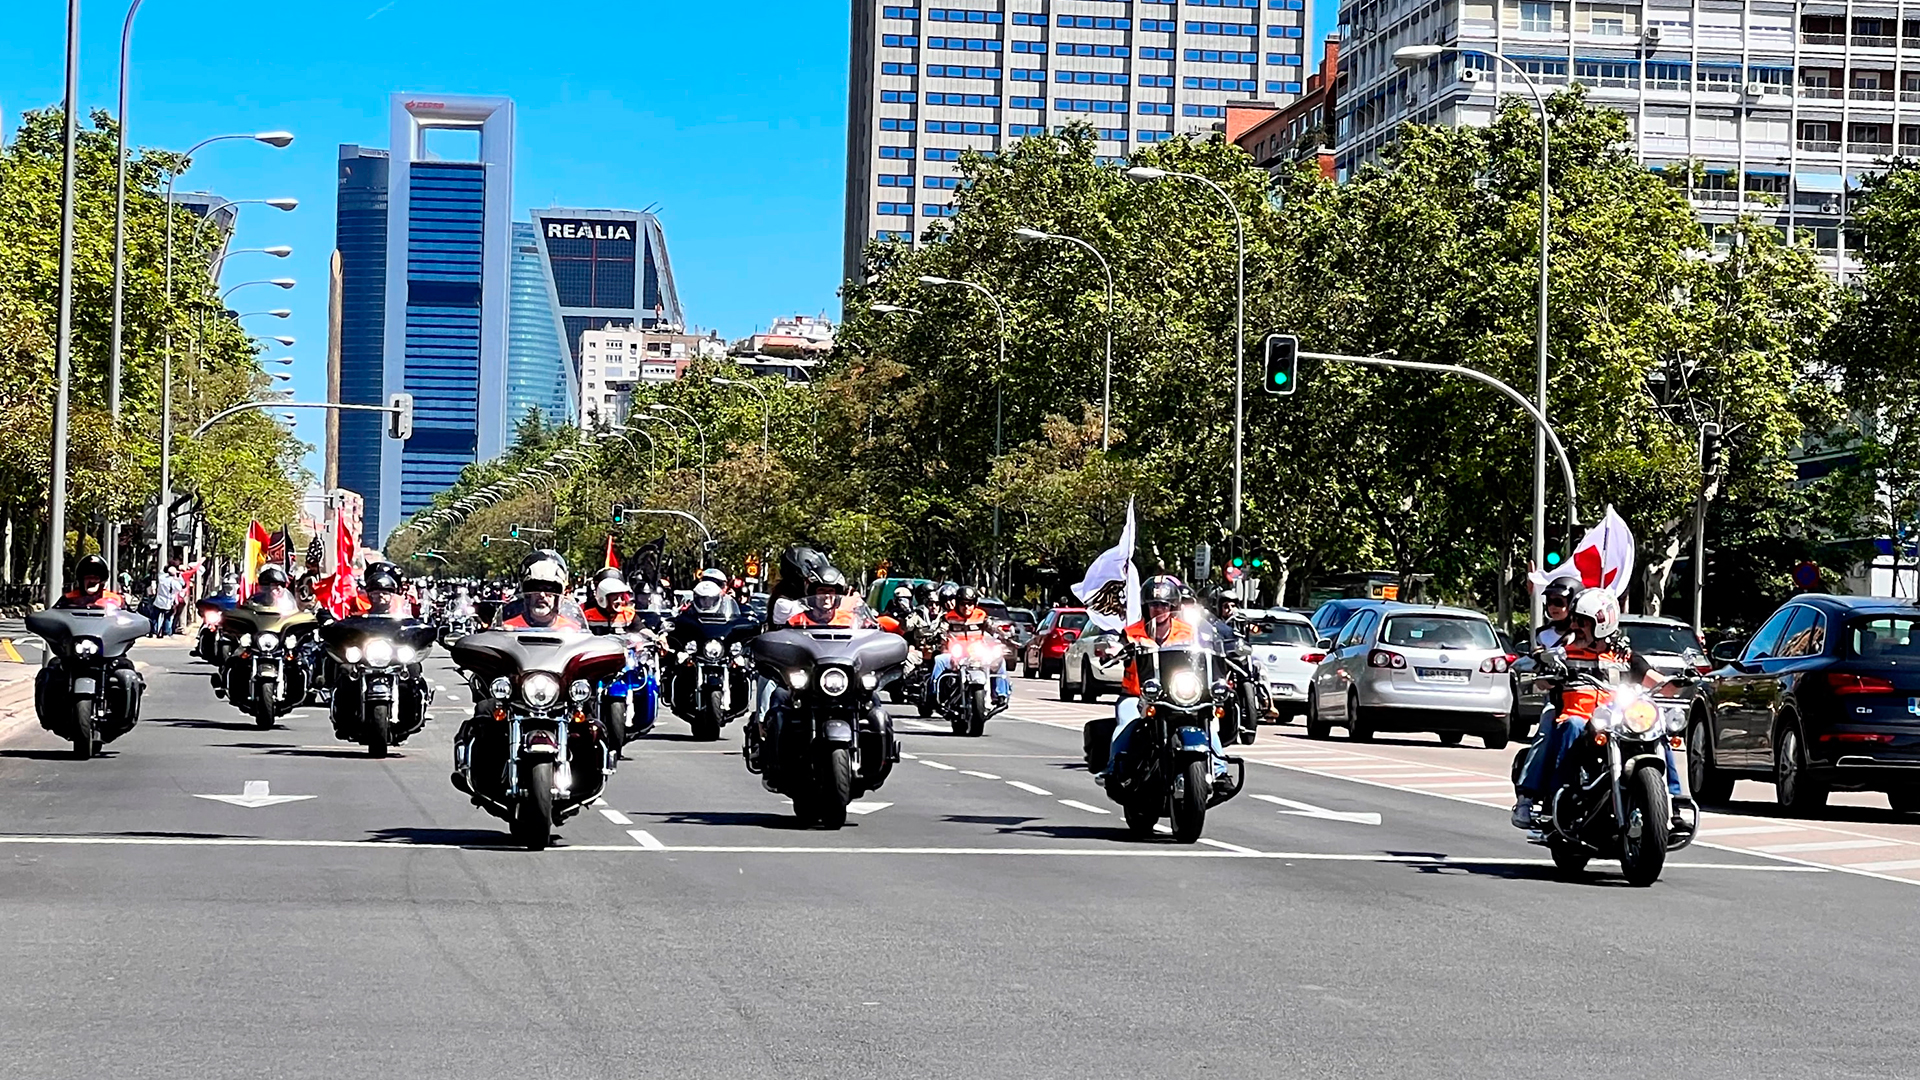 Reserva fecha: el 14 de mayo vuelve el Desfile KM0 de Harley-Davidson por las calles de Madrid